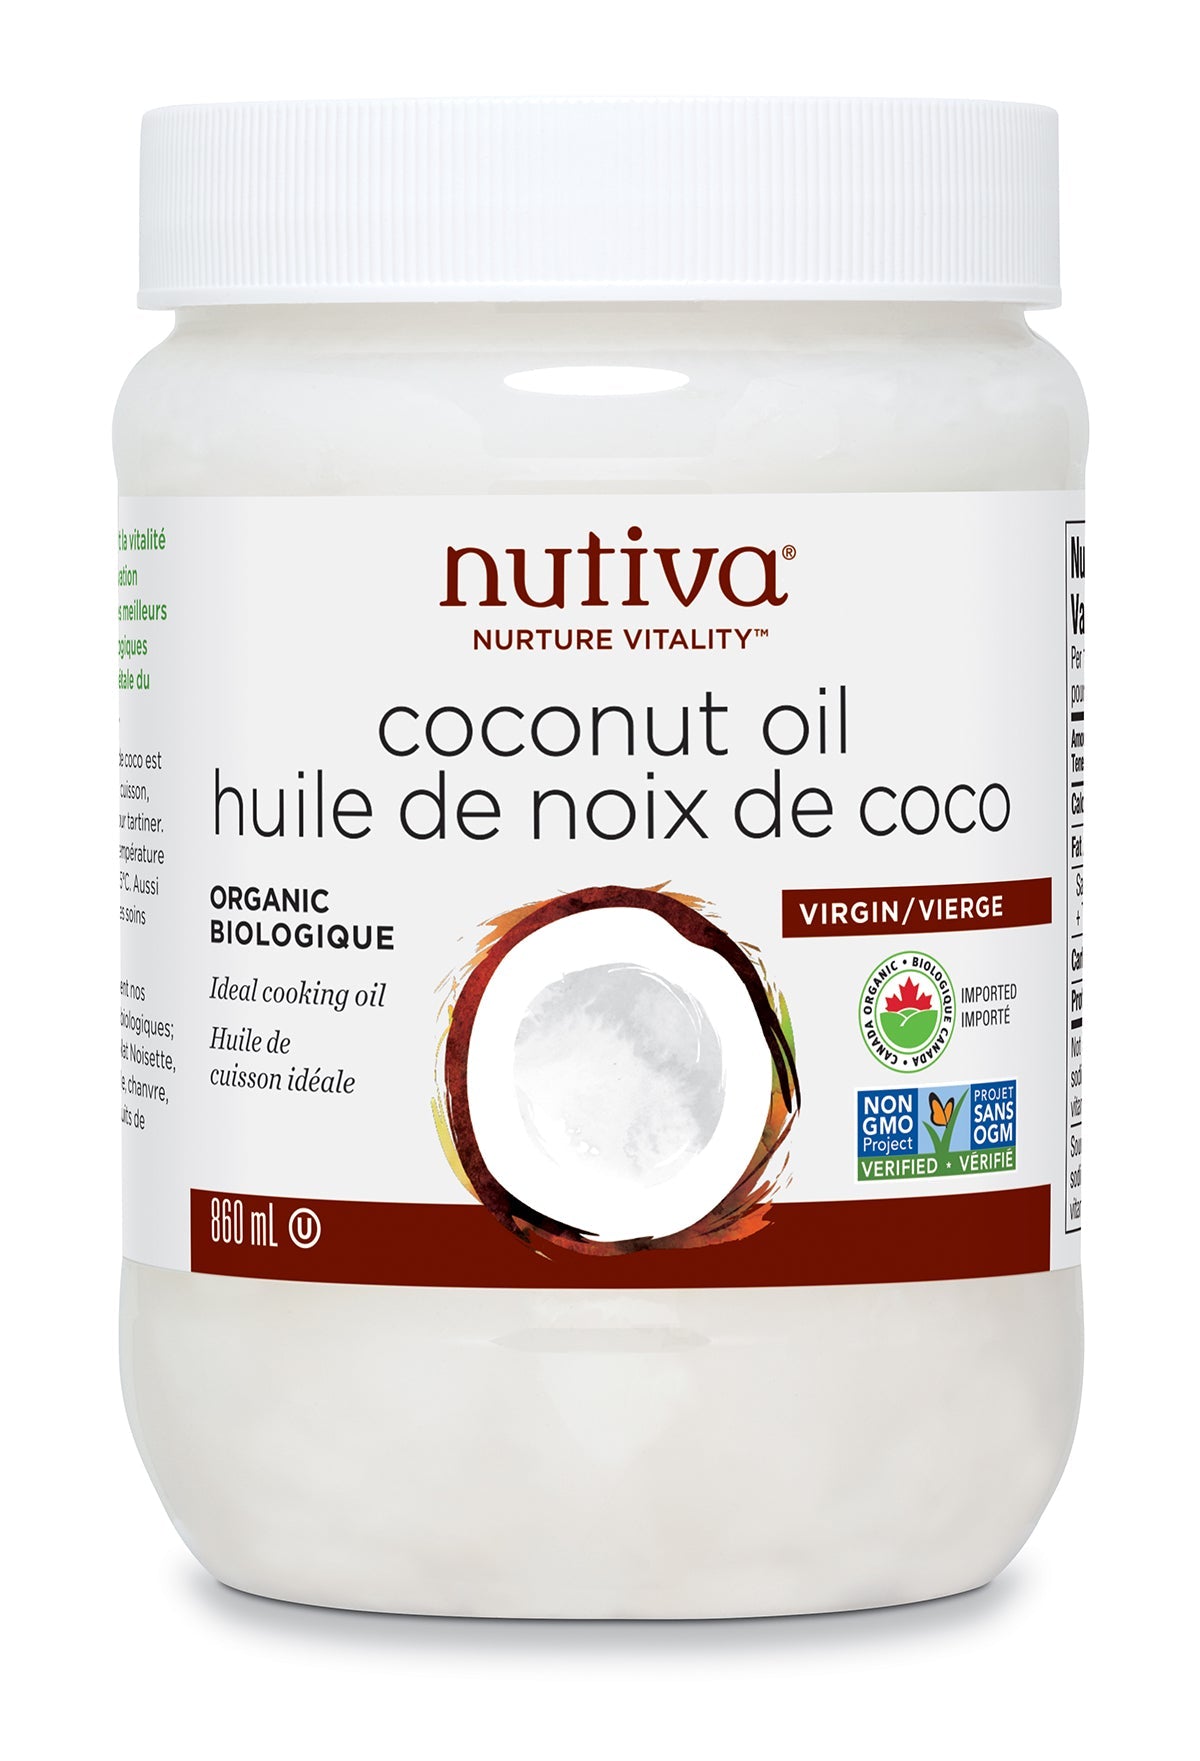 Nutiva Organic Virgin Coconut Oil 860ml